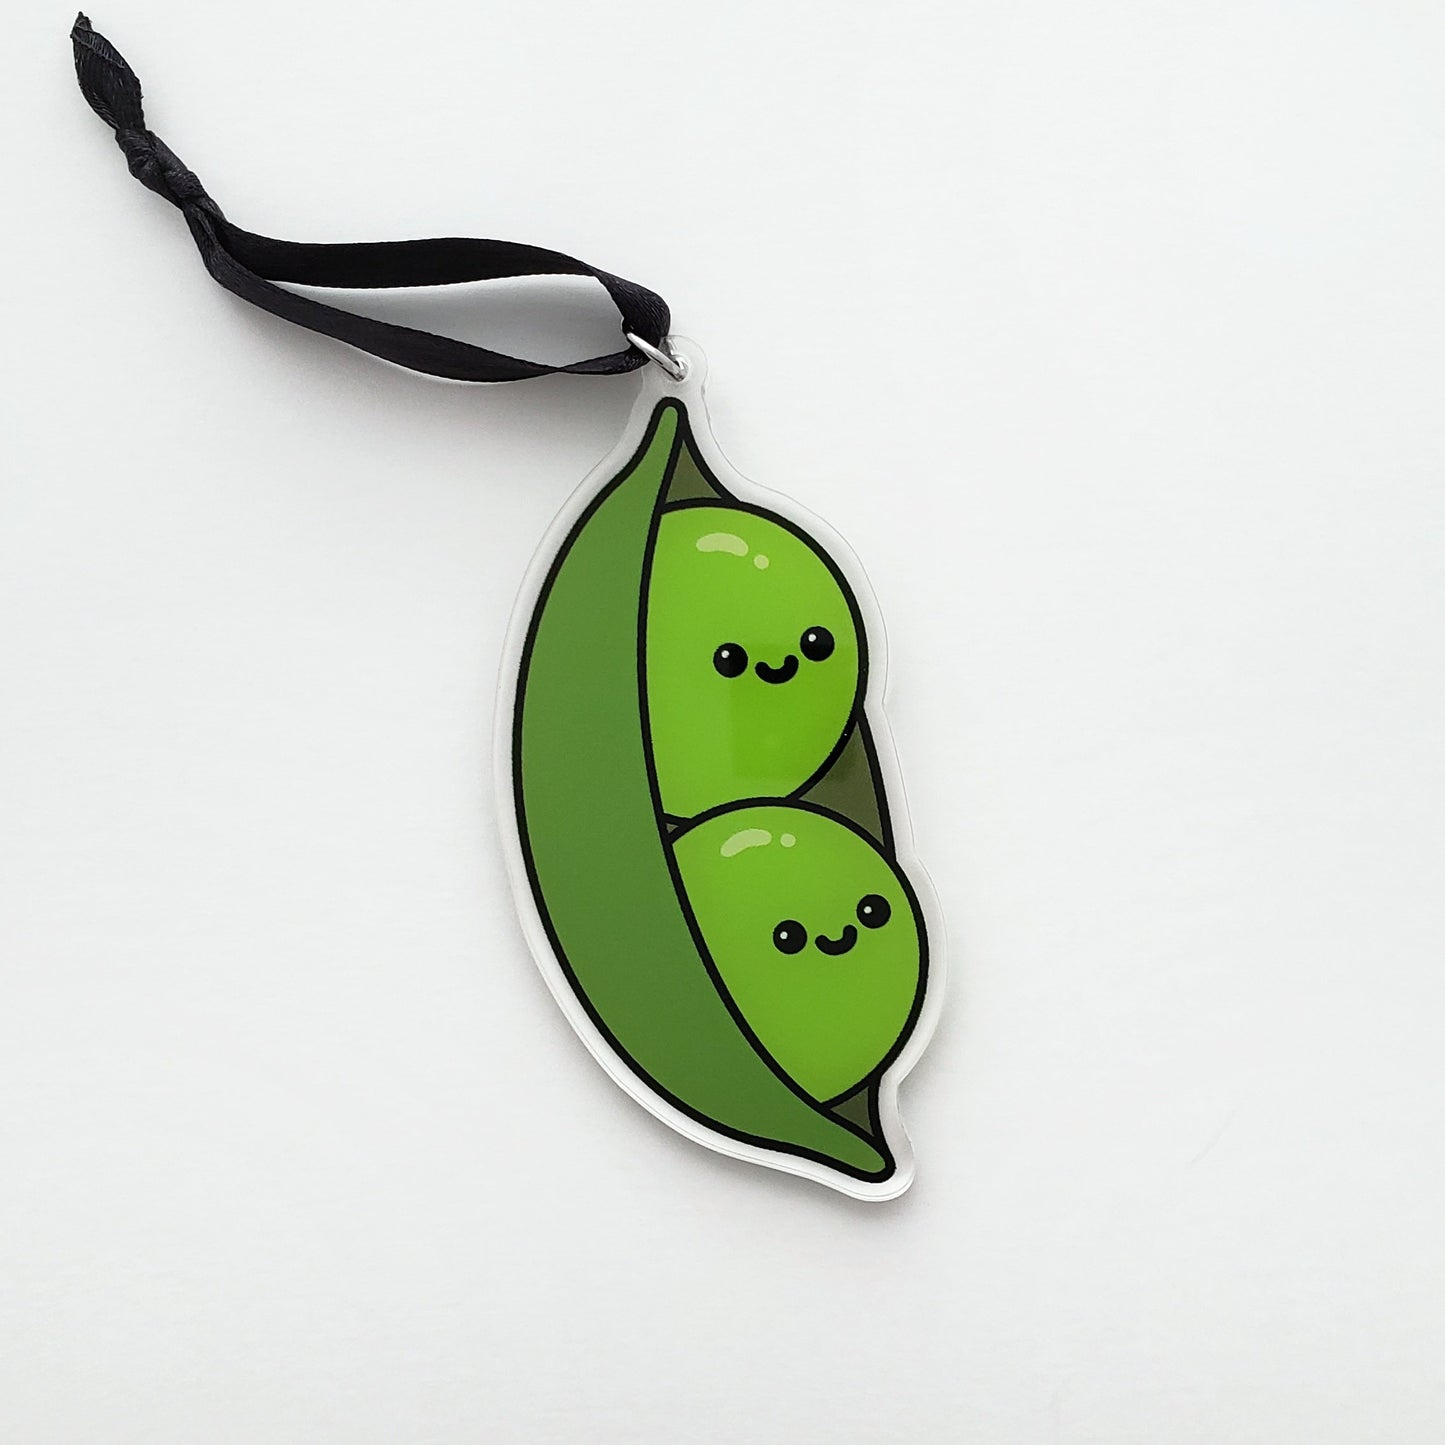 Peas in a Pod ornament